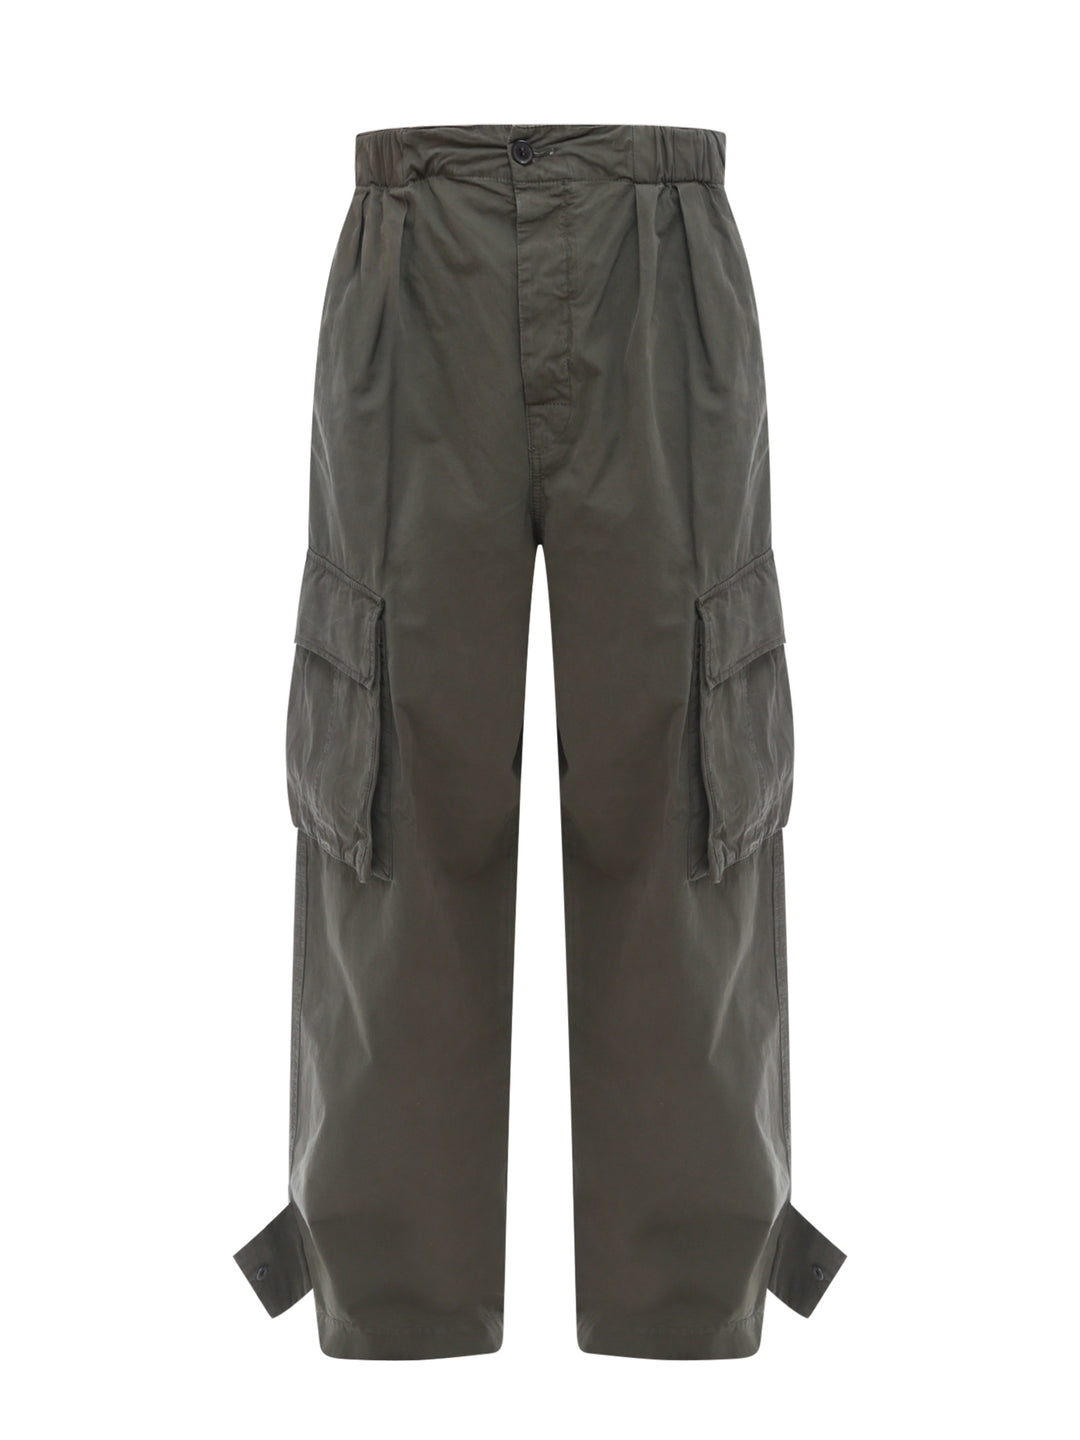 Pantalone cargo in cotone con fascia elastica in vita